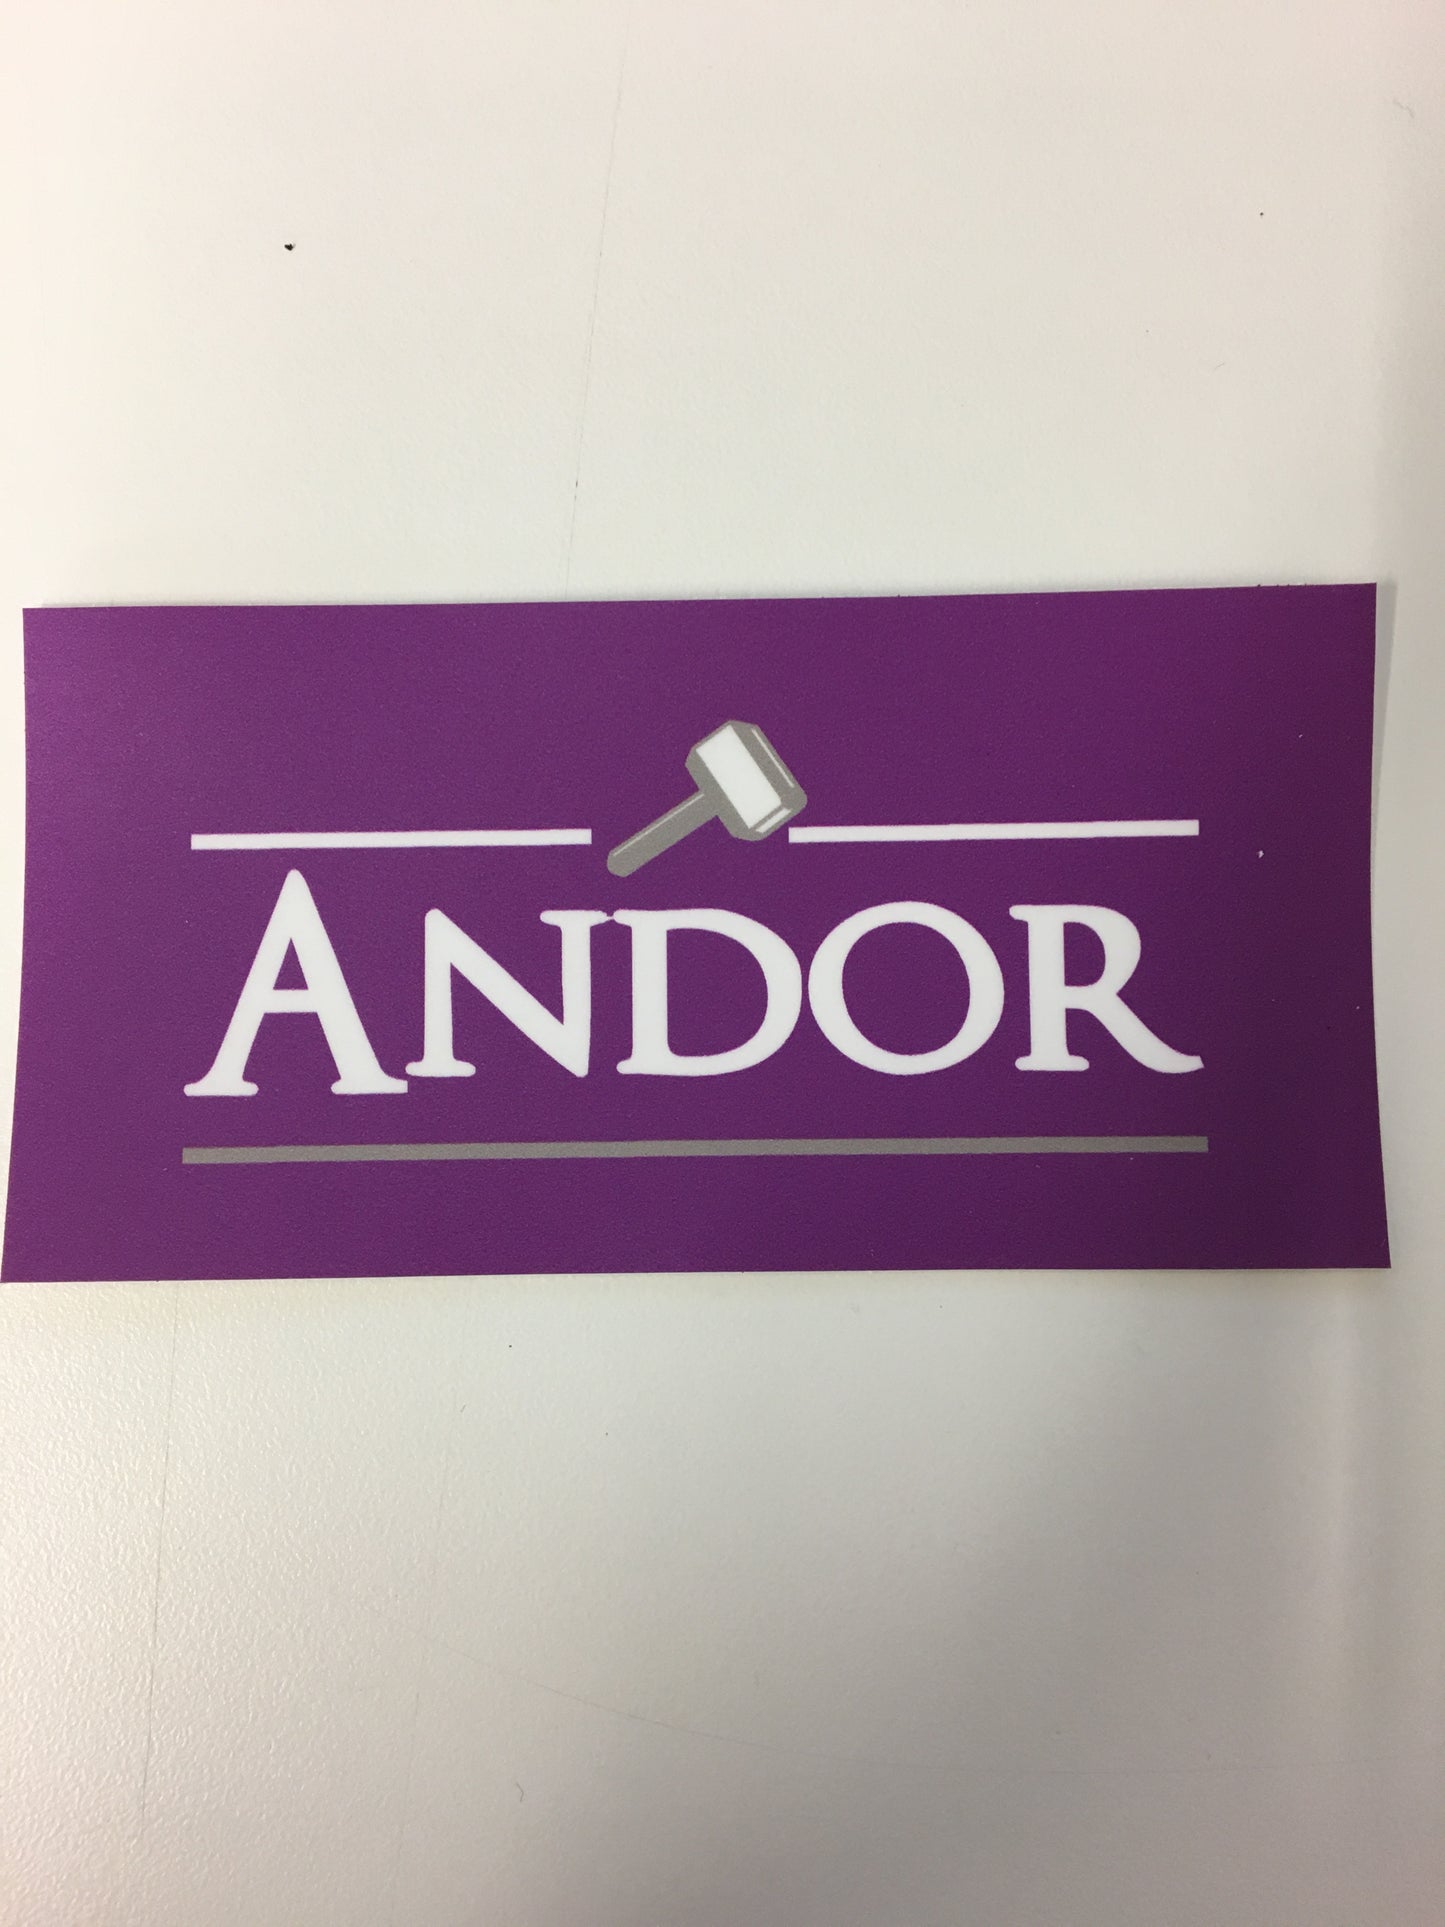 Sticker - Andor/Aquila/Ethon House